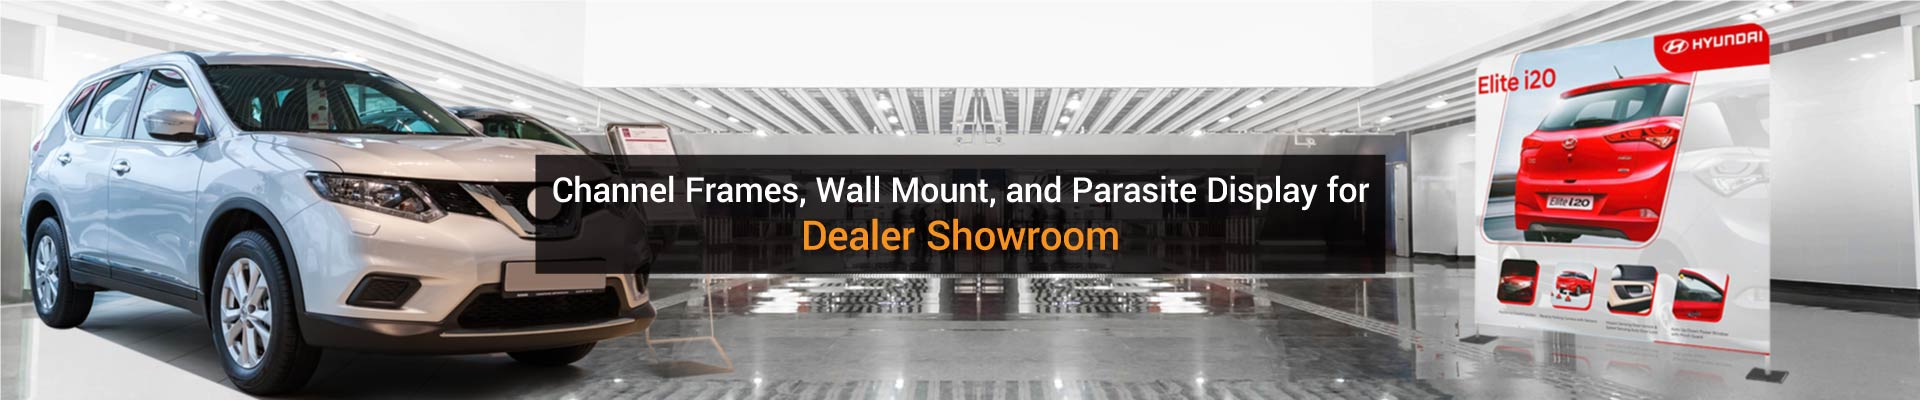 Dealer Showroom